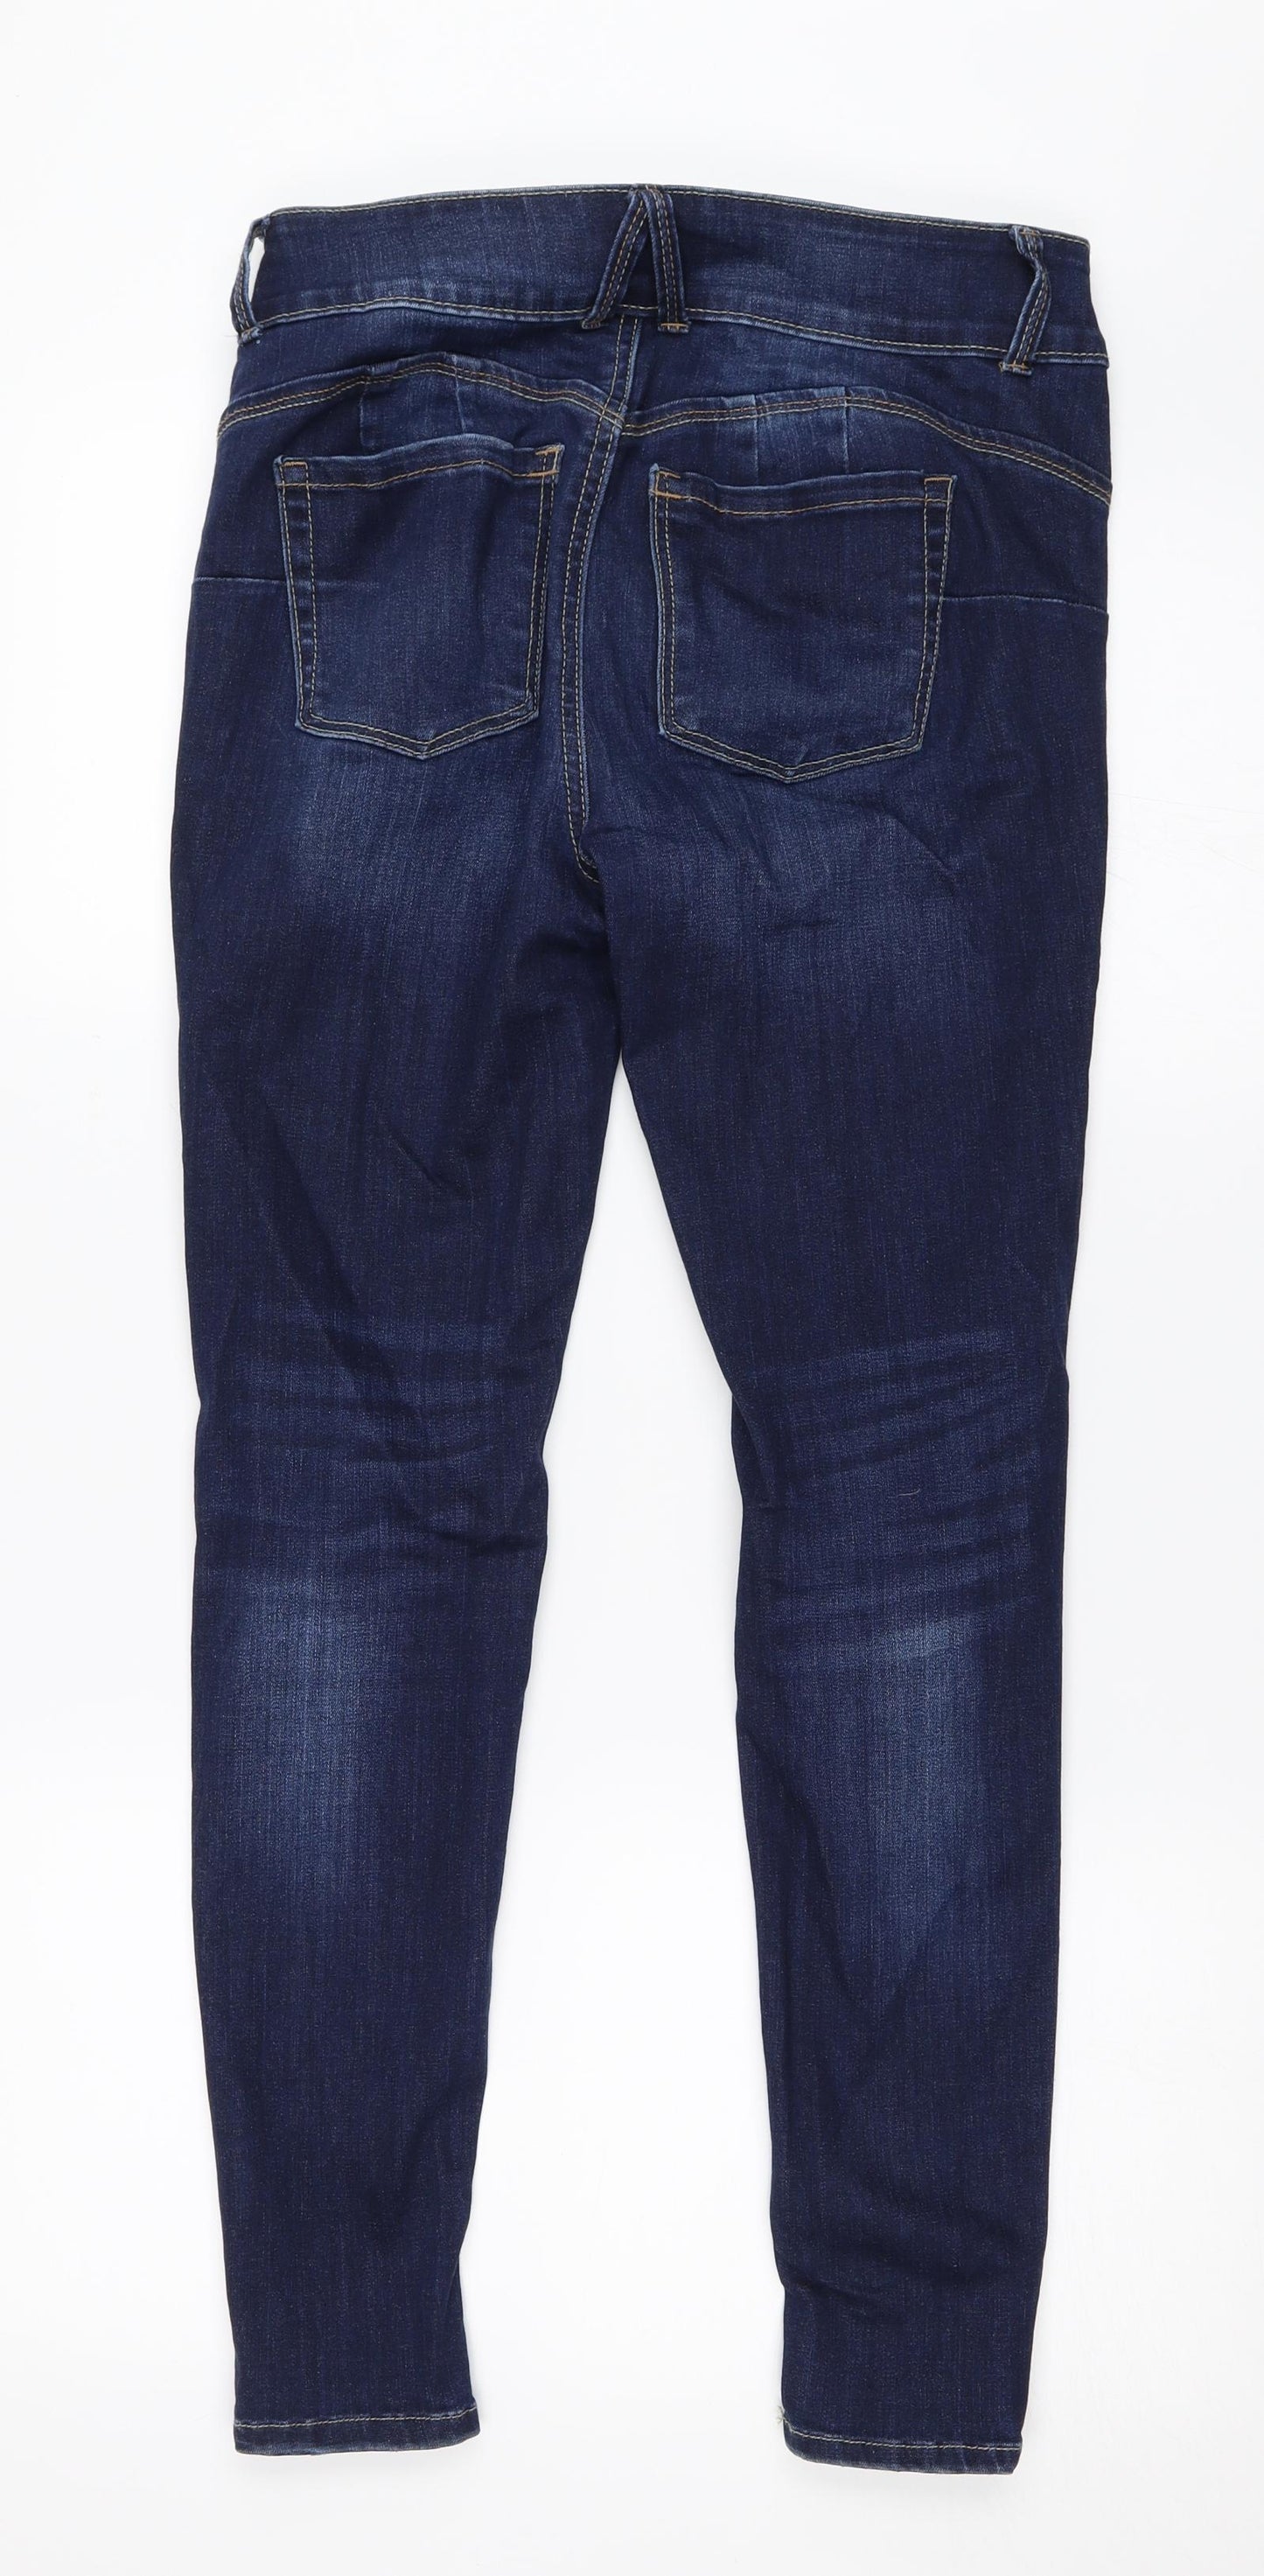 WAX JEAN Womens Blue  Denim Skinny Jeans Size 27 in L27 in